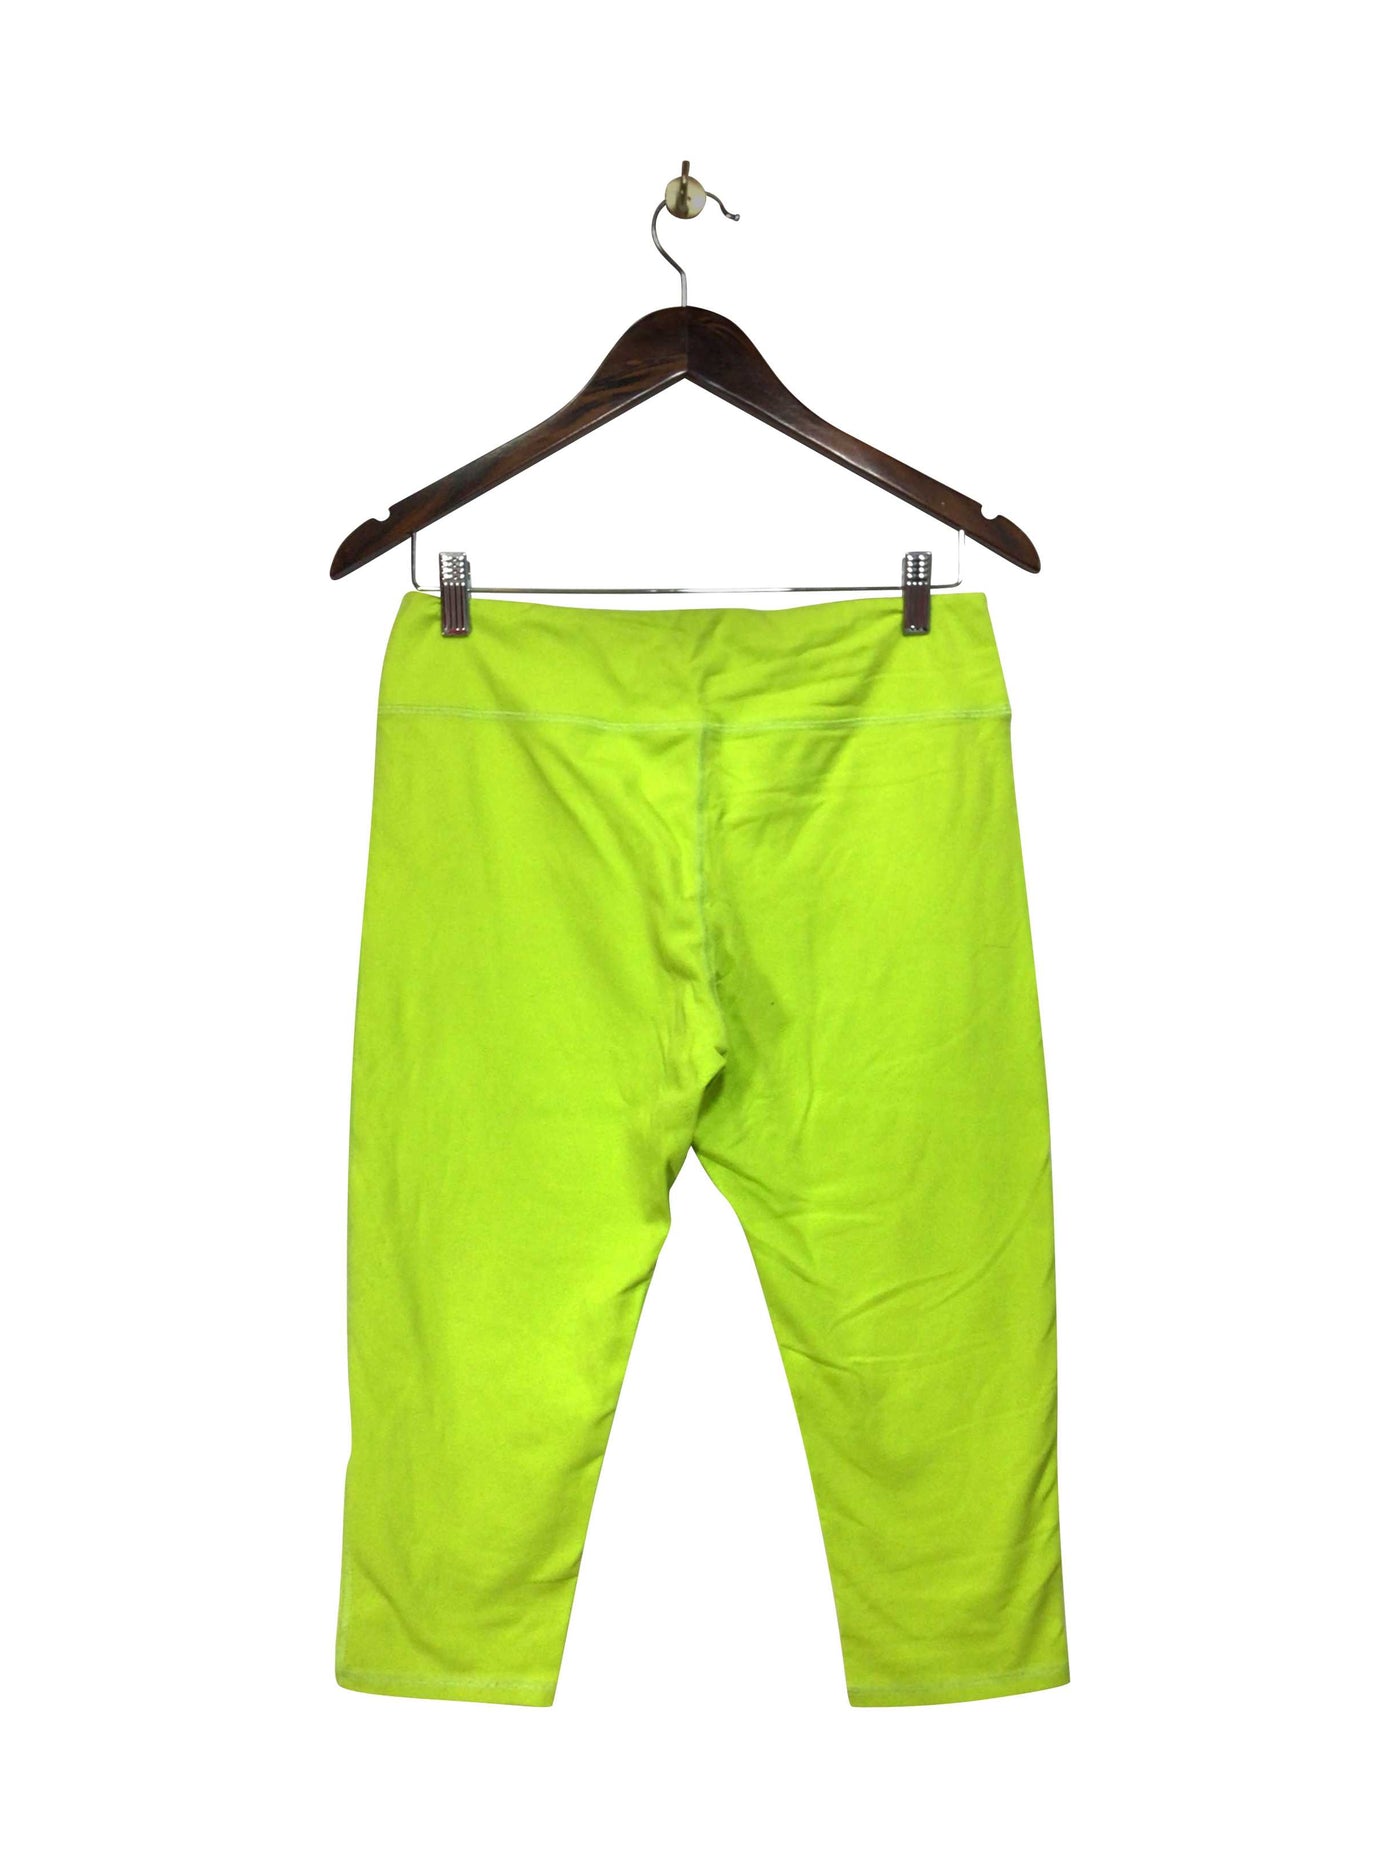 LEO STAR ATHLETICA Regular fit Activewear Legging in Yellow  -  8  13.25 Koop